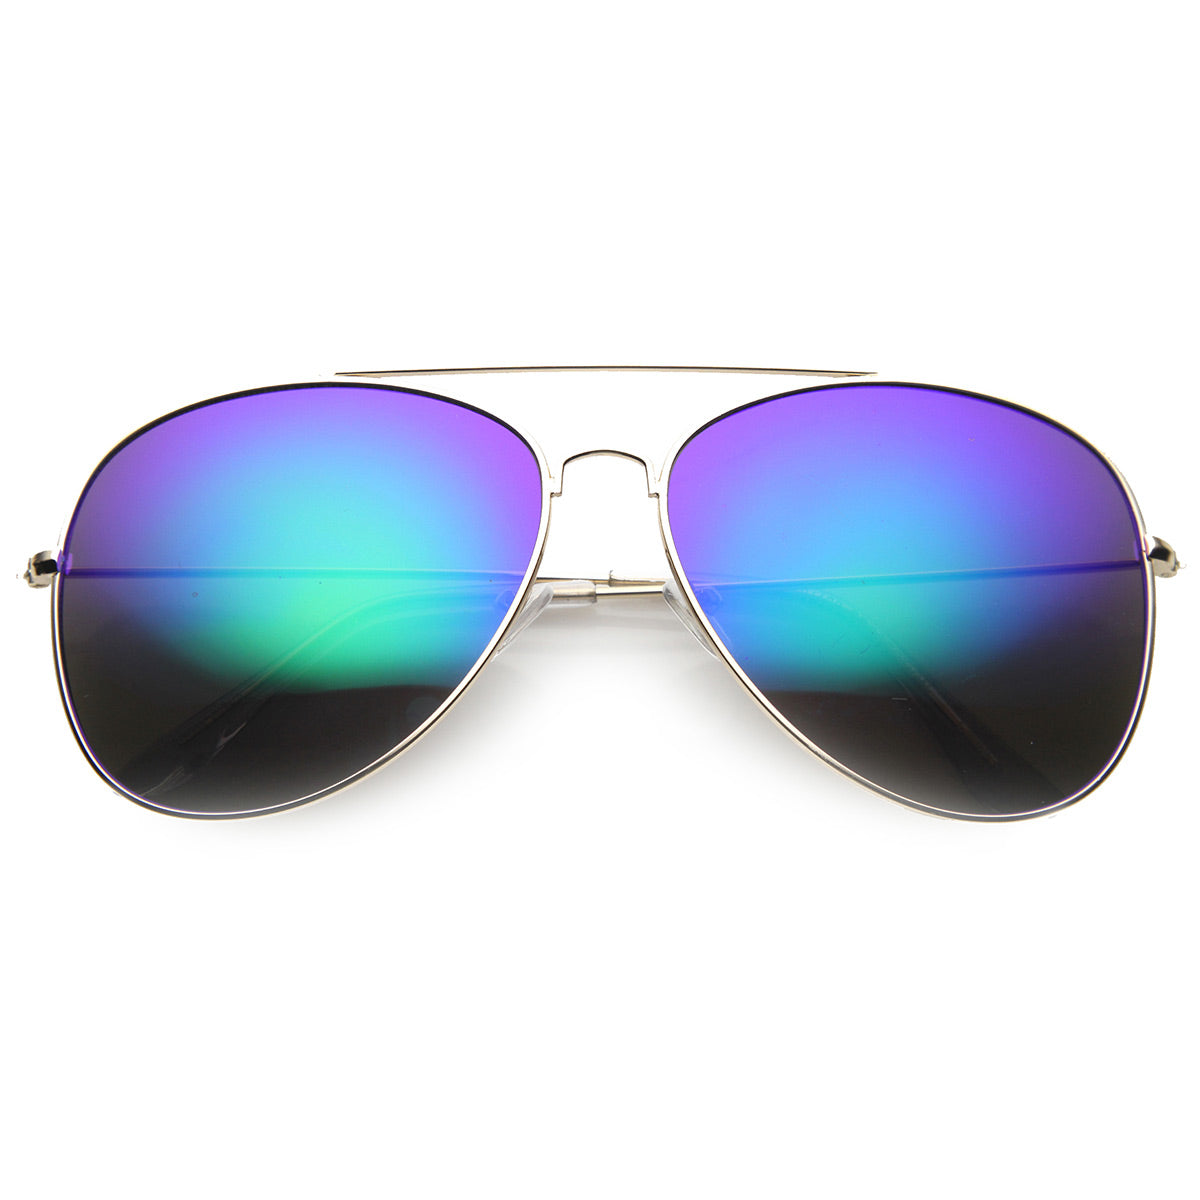 Update more than 277 rainbow mirrored aviator sunglasses